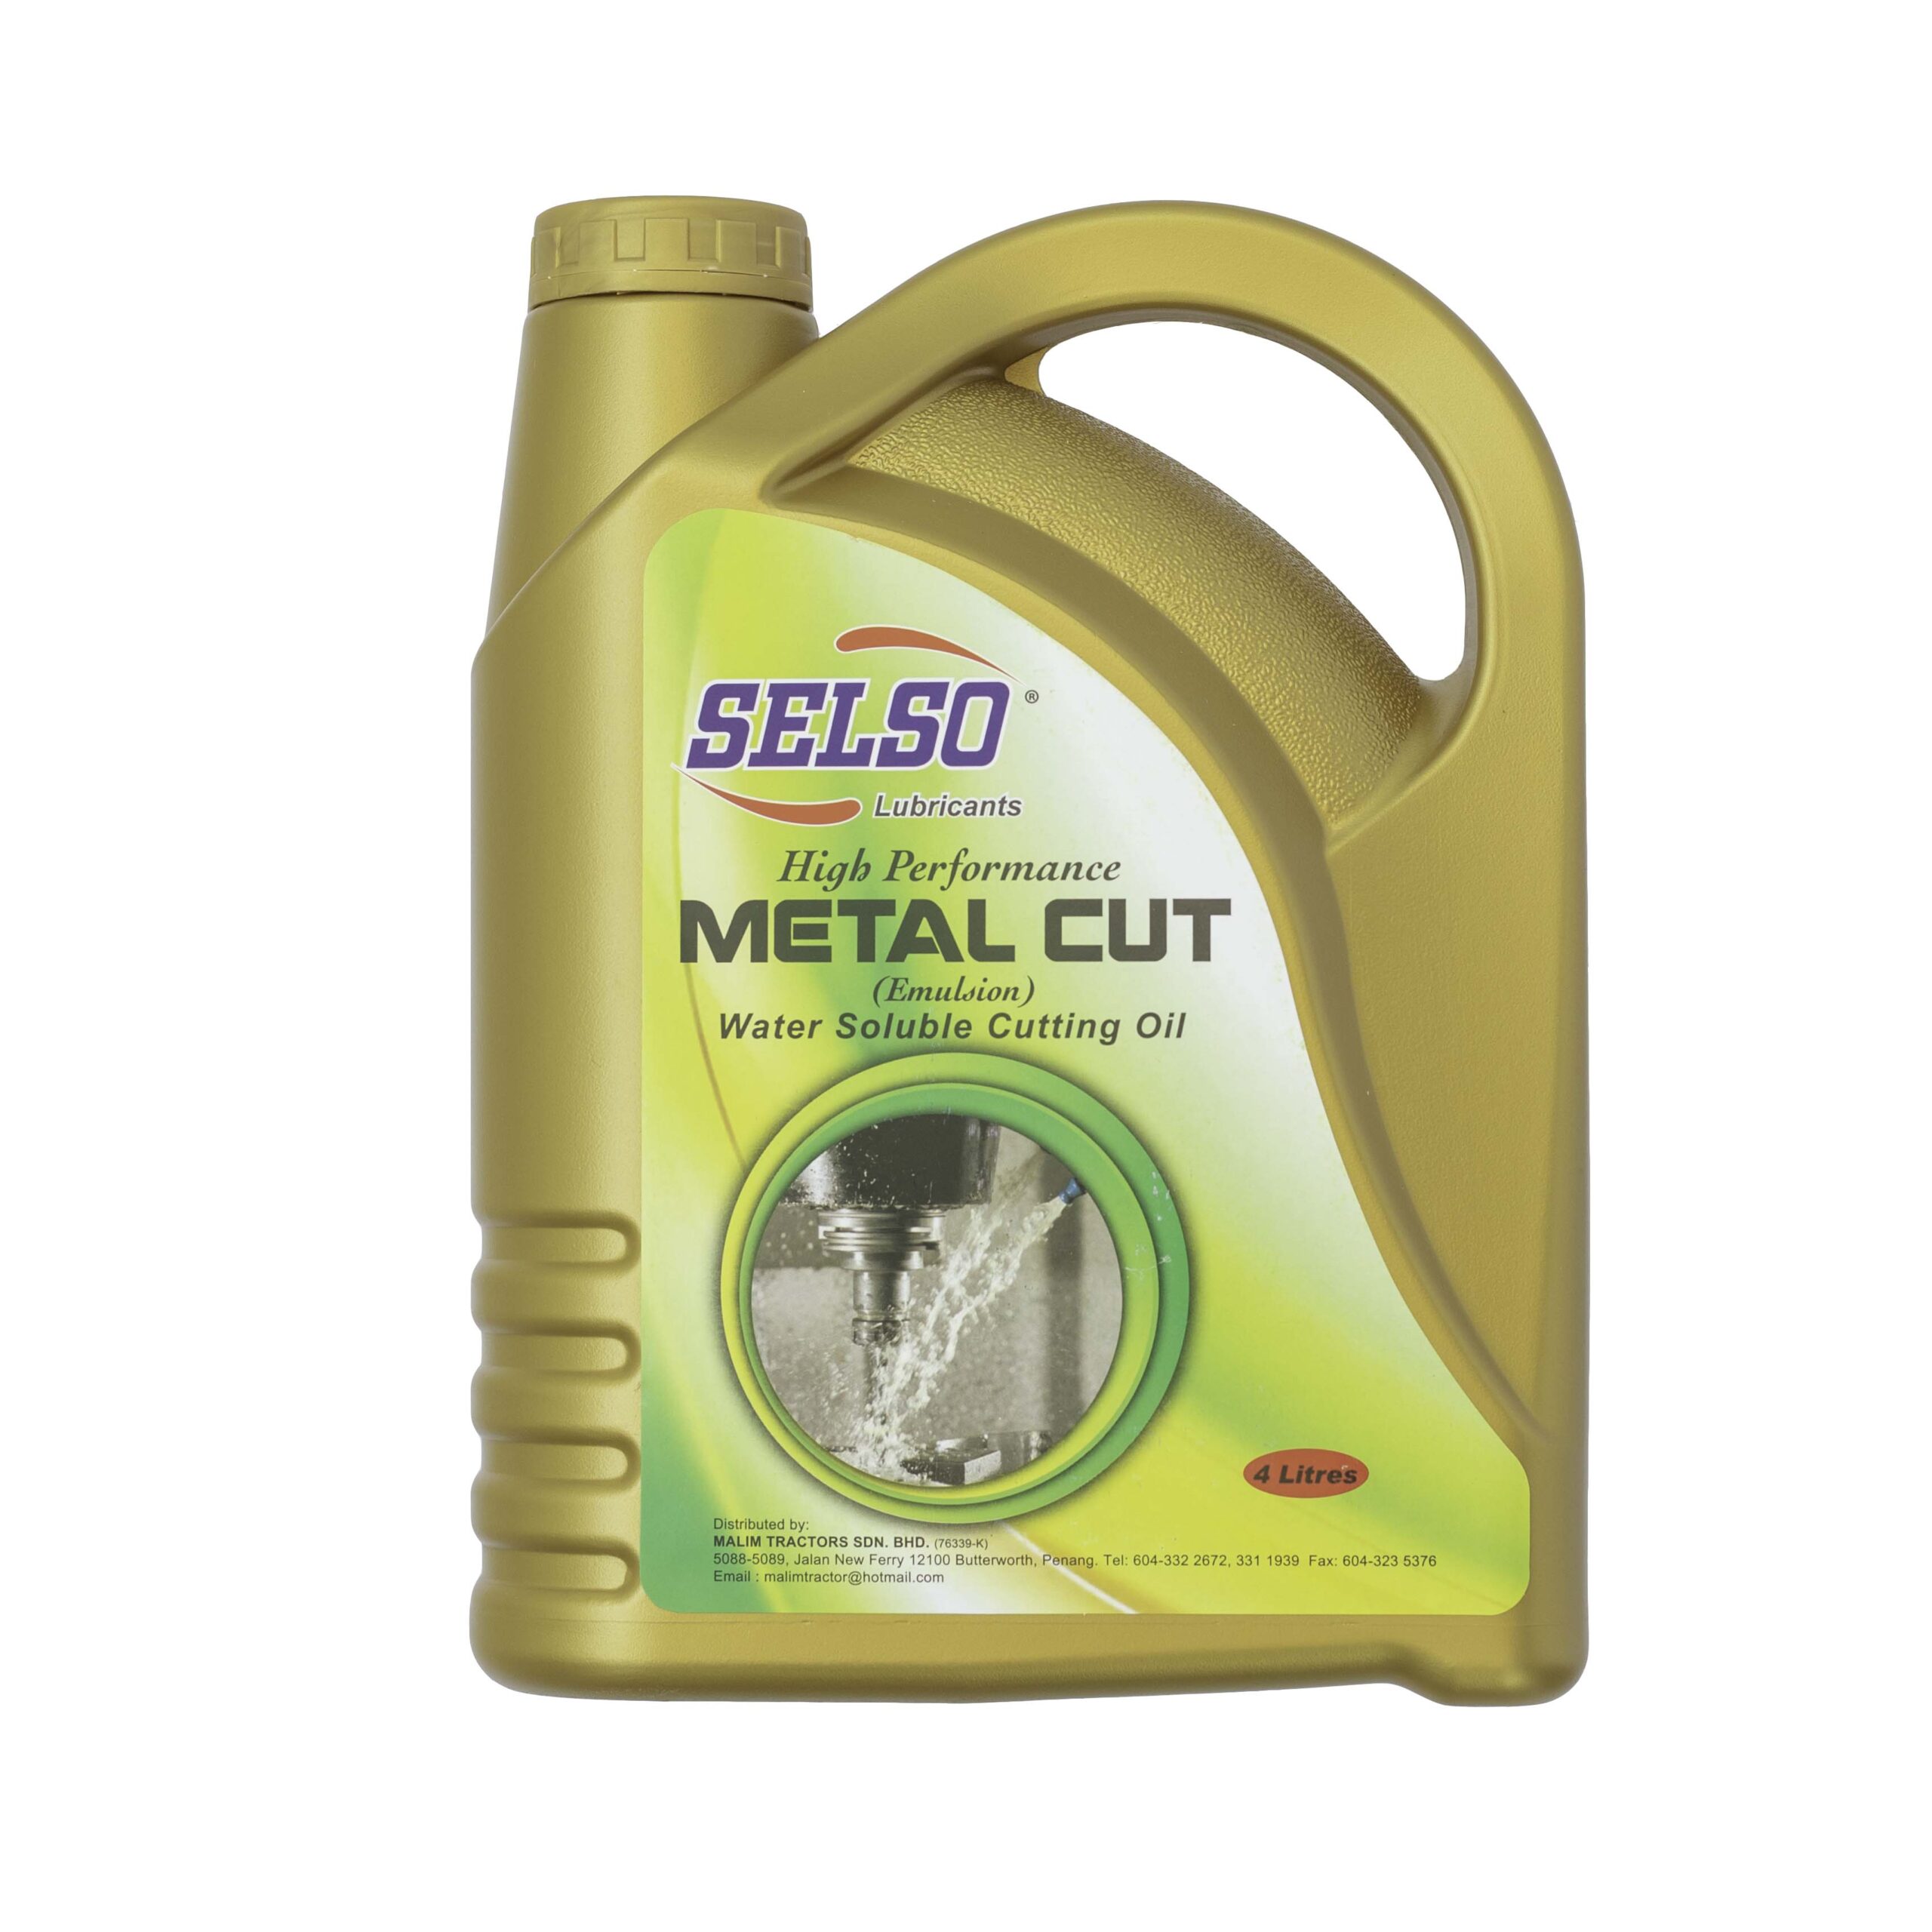 Metal Cutting Oil